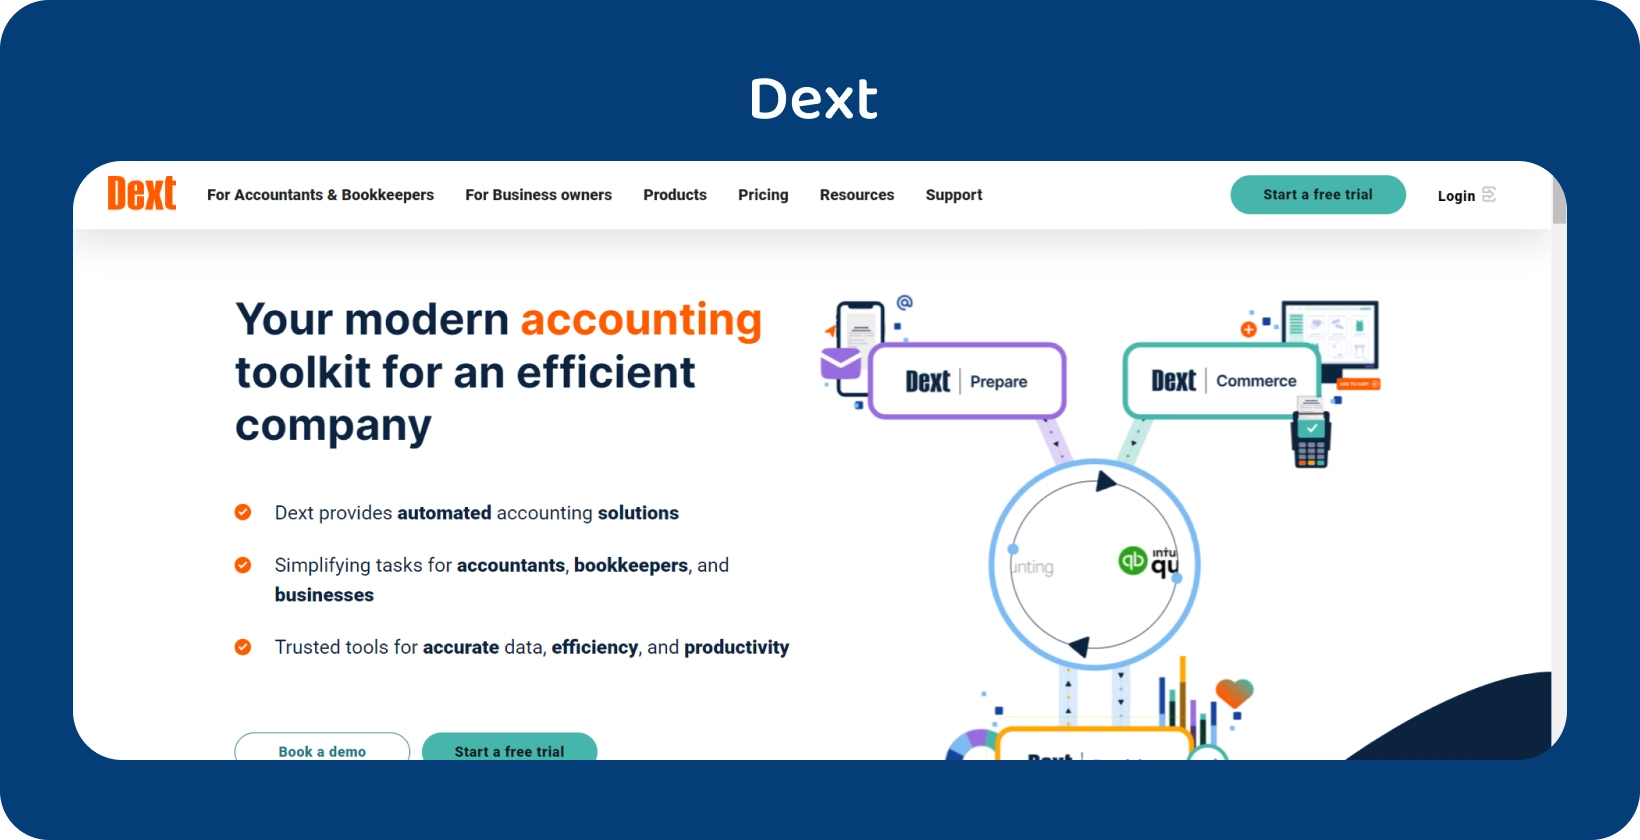 La interfaz del kit de herramientas de contabilidad de vanguardia de Dext, destaca la automatización para los profesionales de la contabilidad y la teneduría de libros.